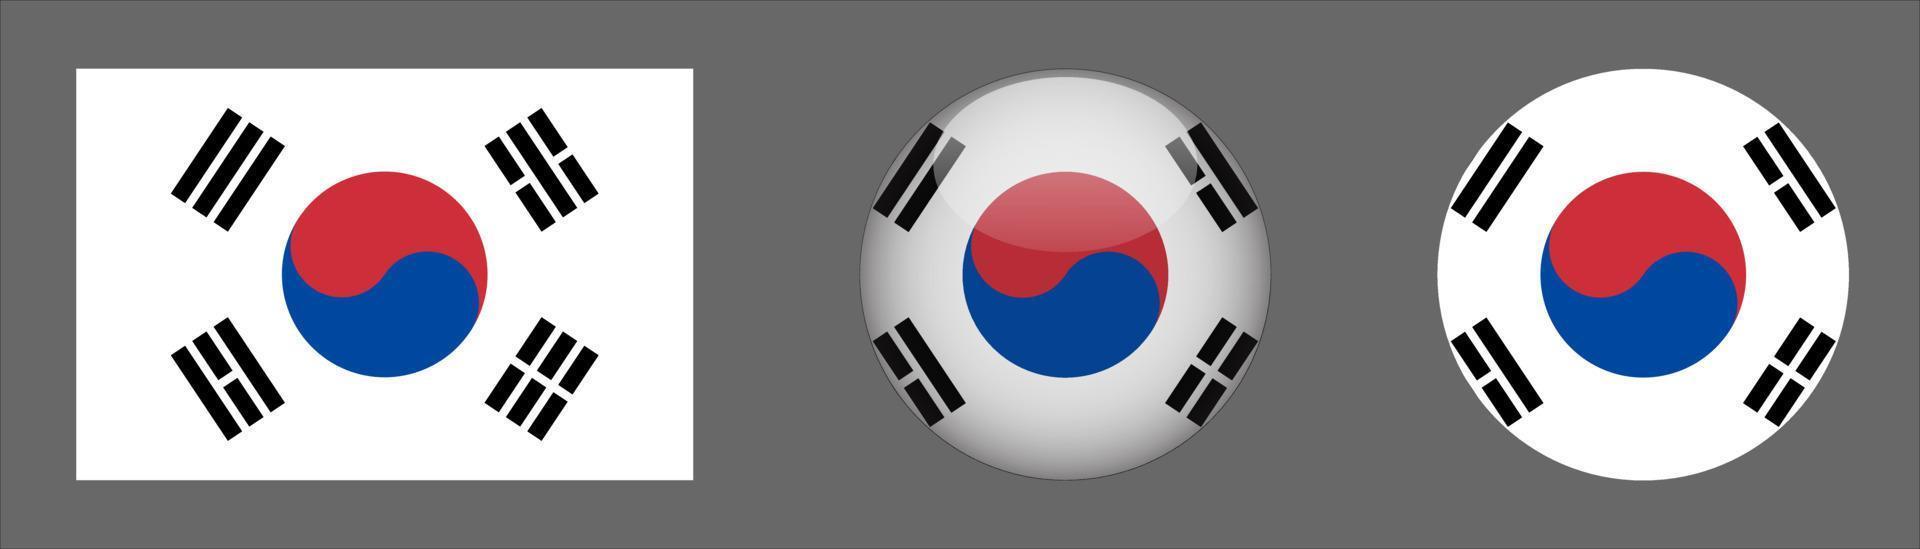 colección de conjunto de bandera de corea del sur, relación de tamaño original, redondeado 3d y redondeado plano. vector